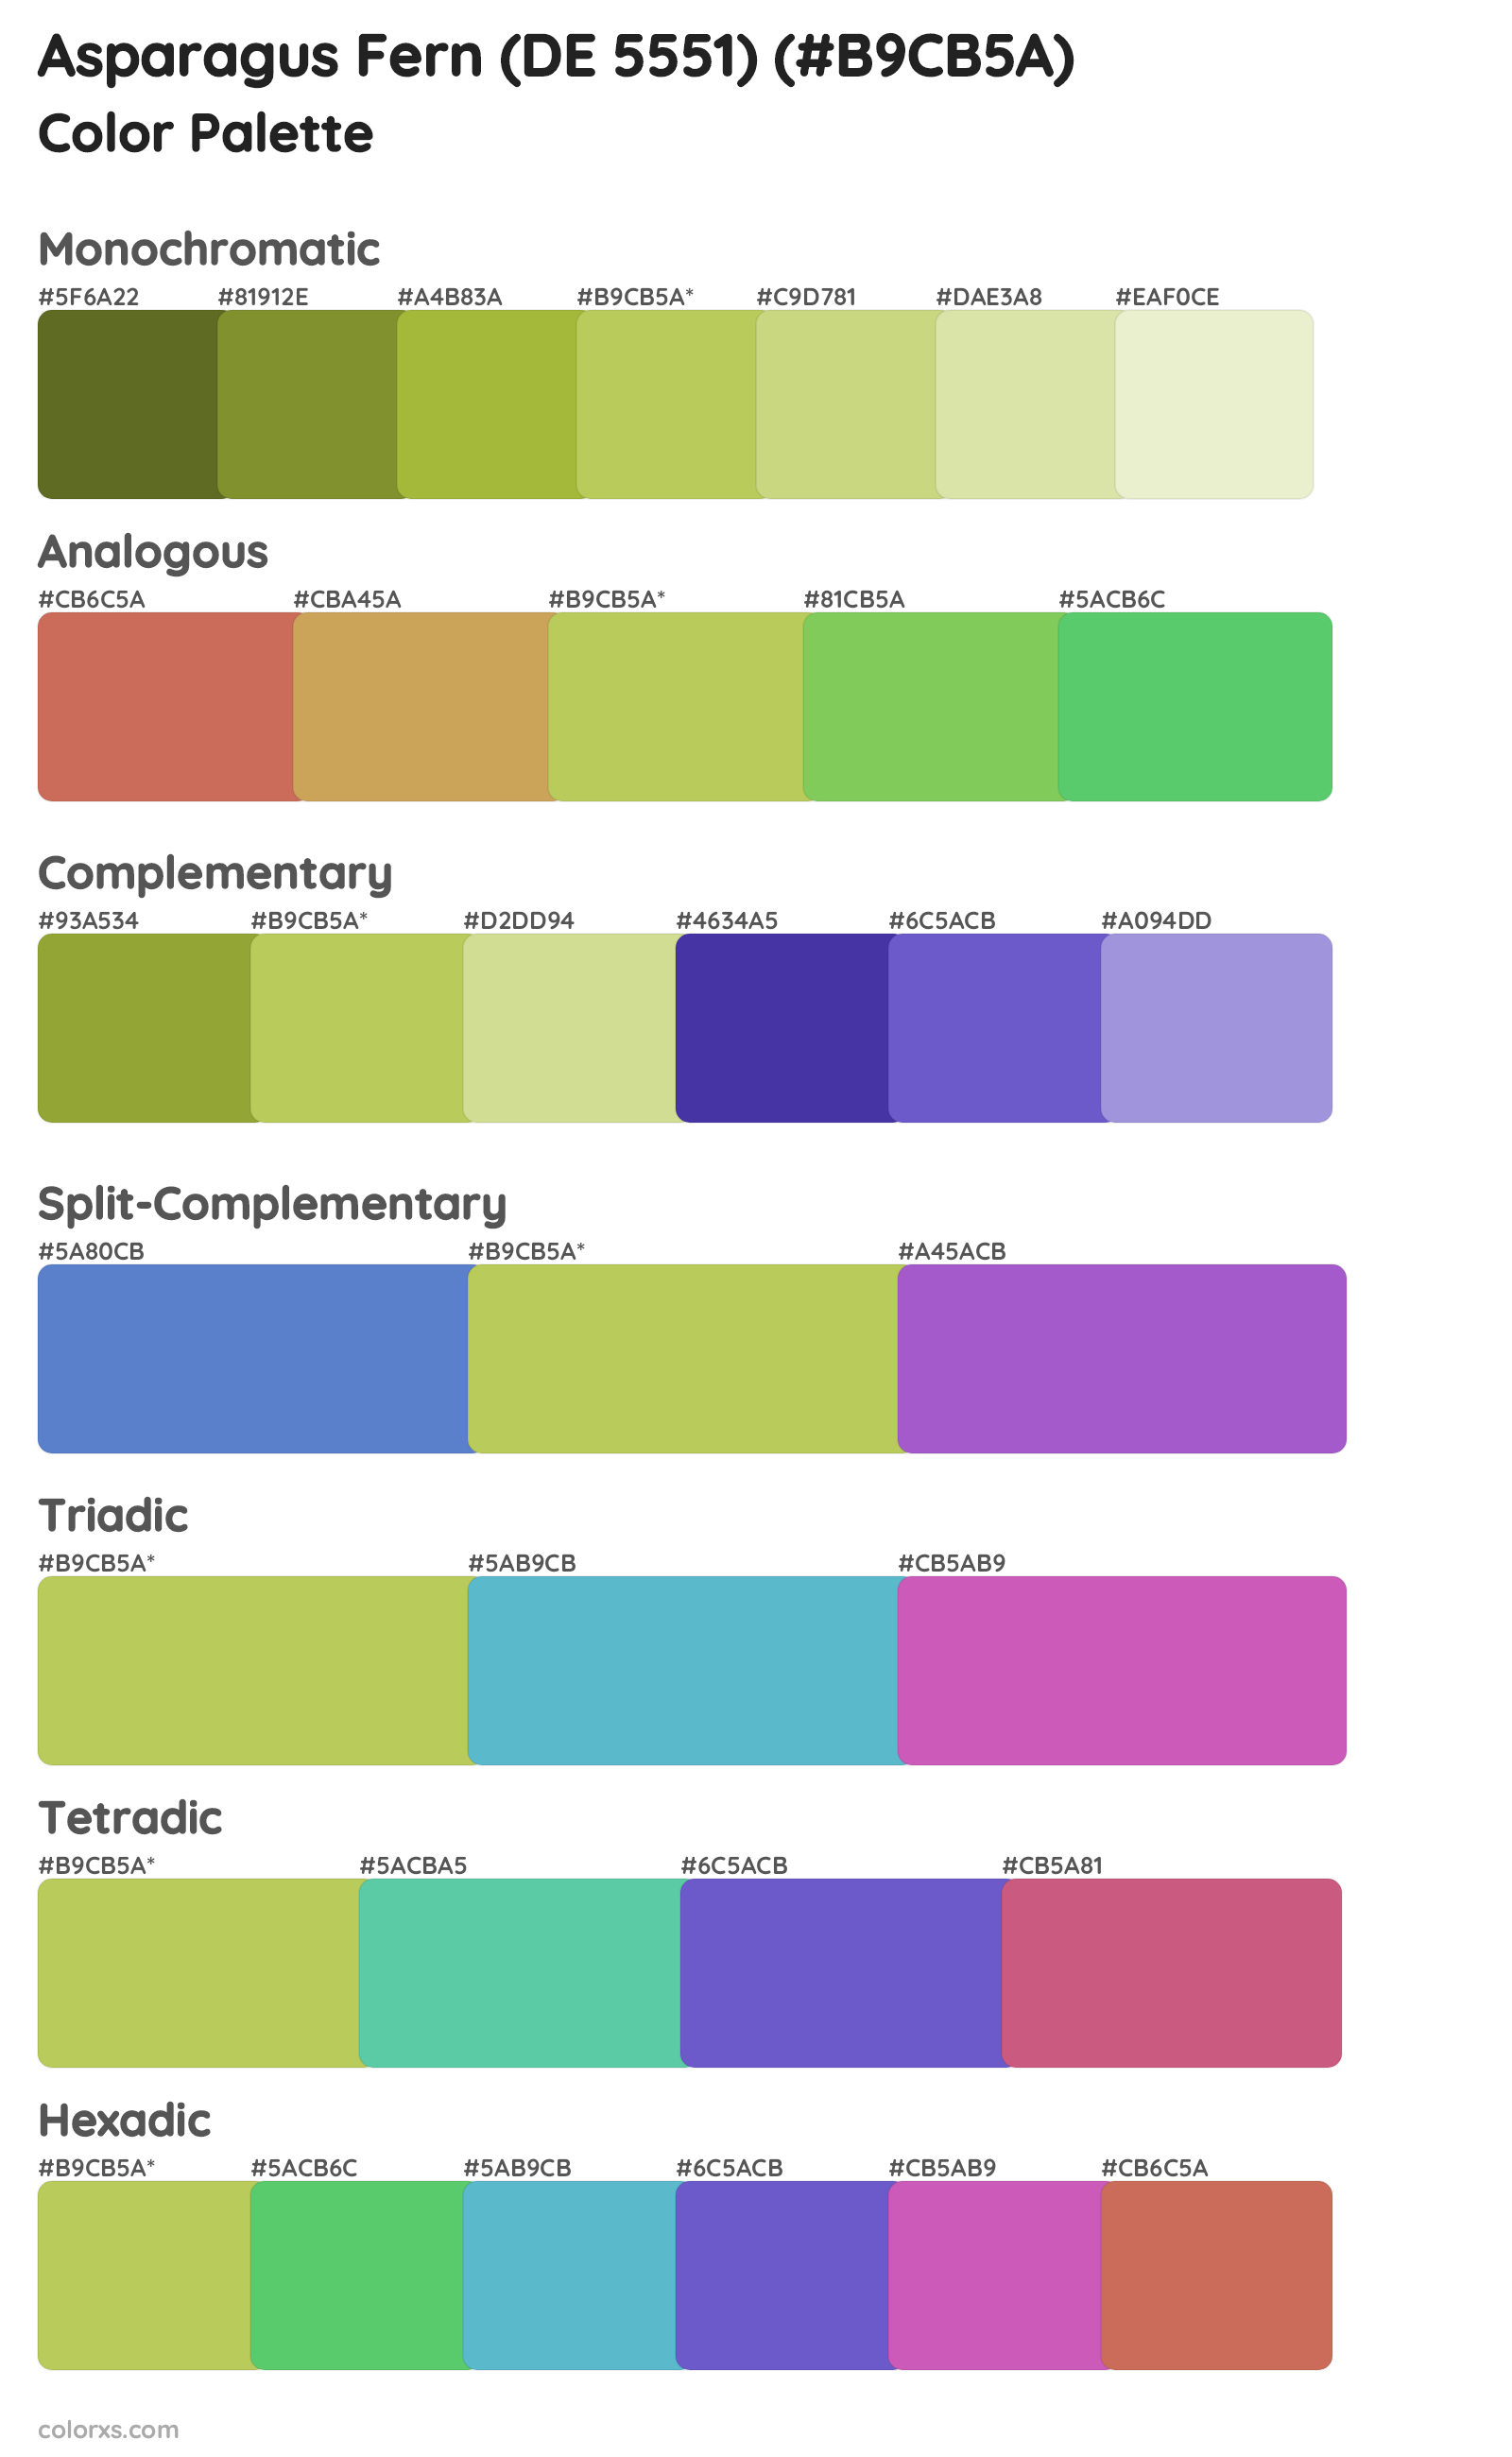 Asparagus Fern (DE 5551) Color Scheme Palettes